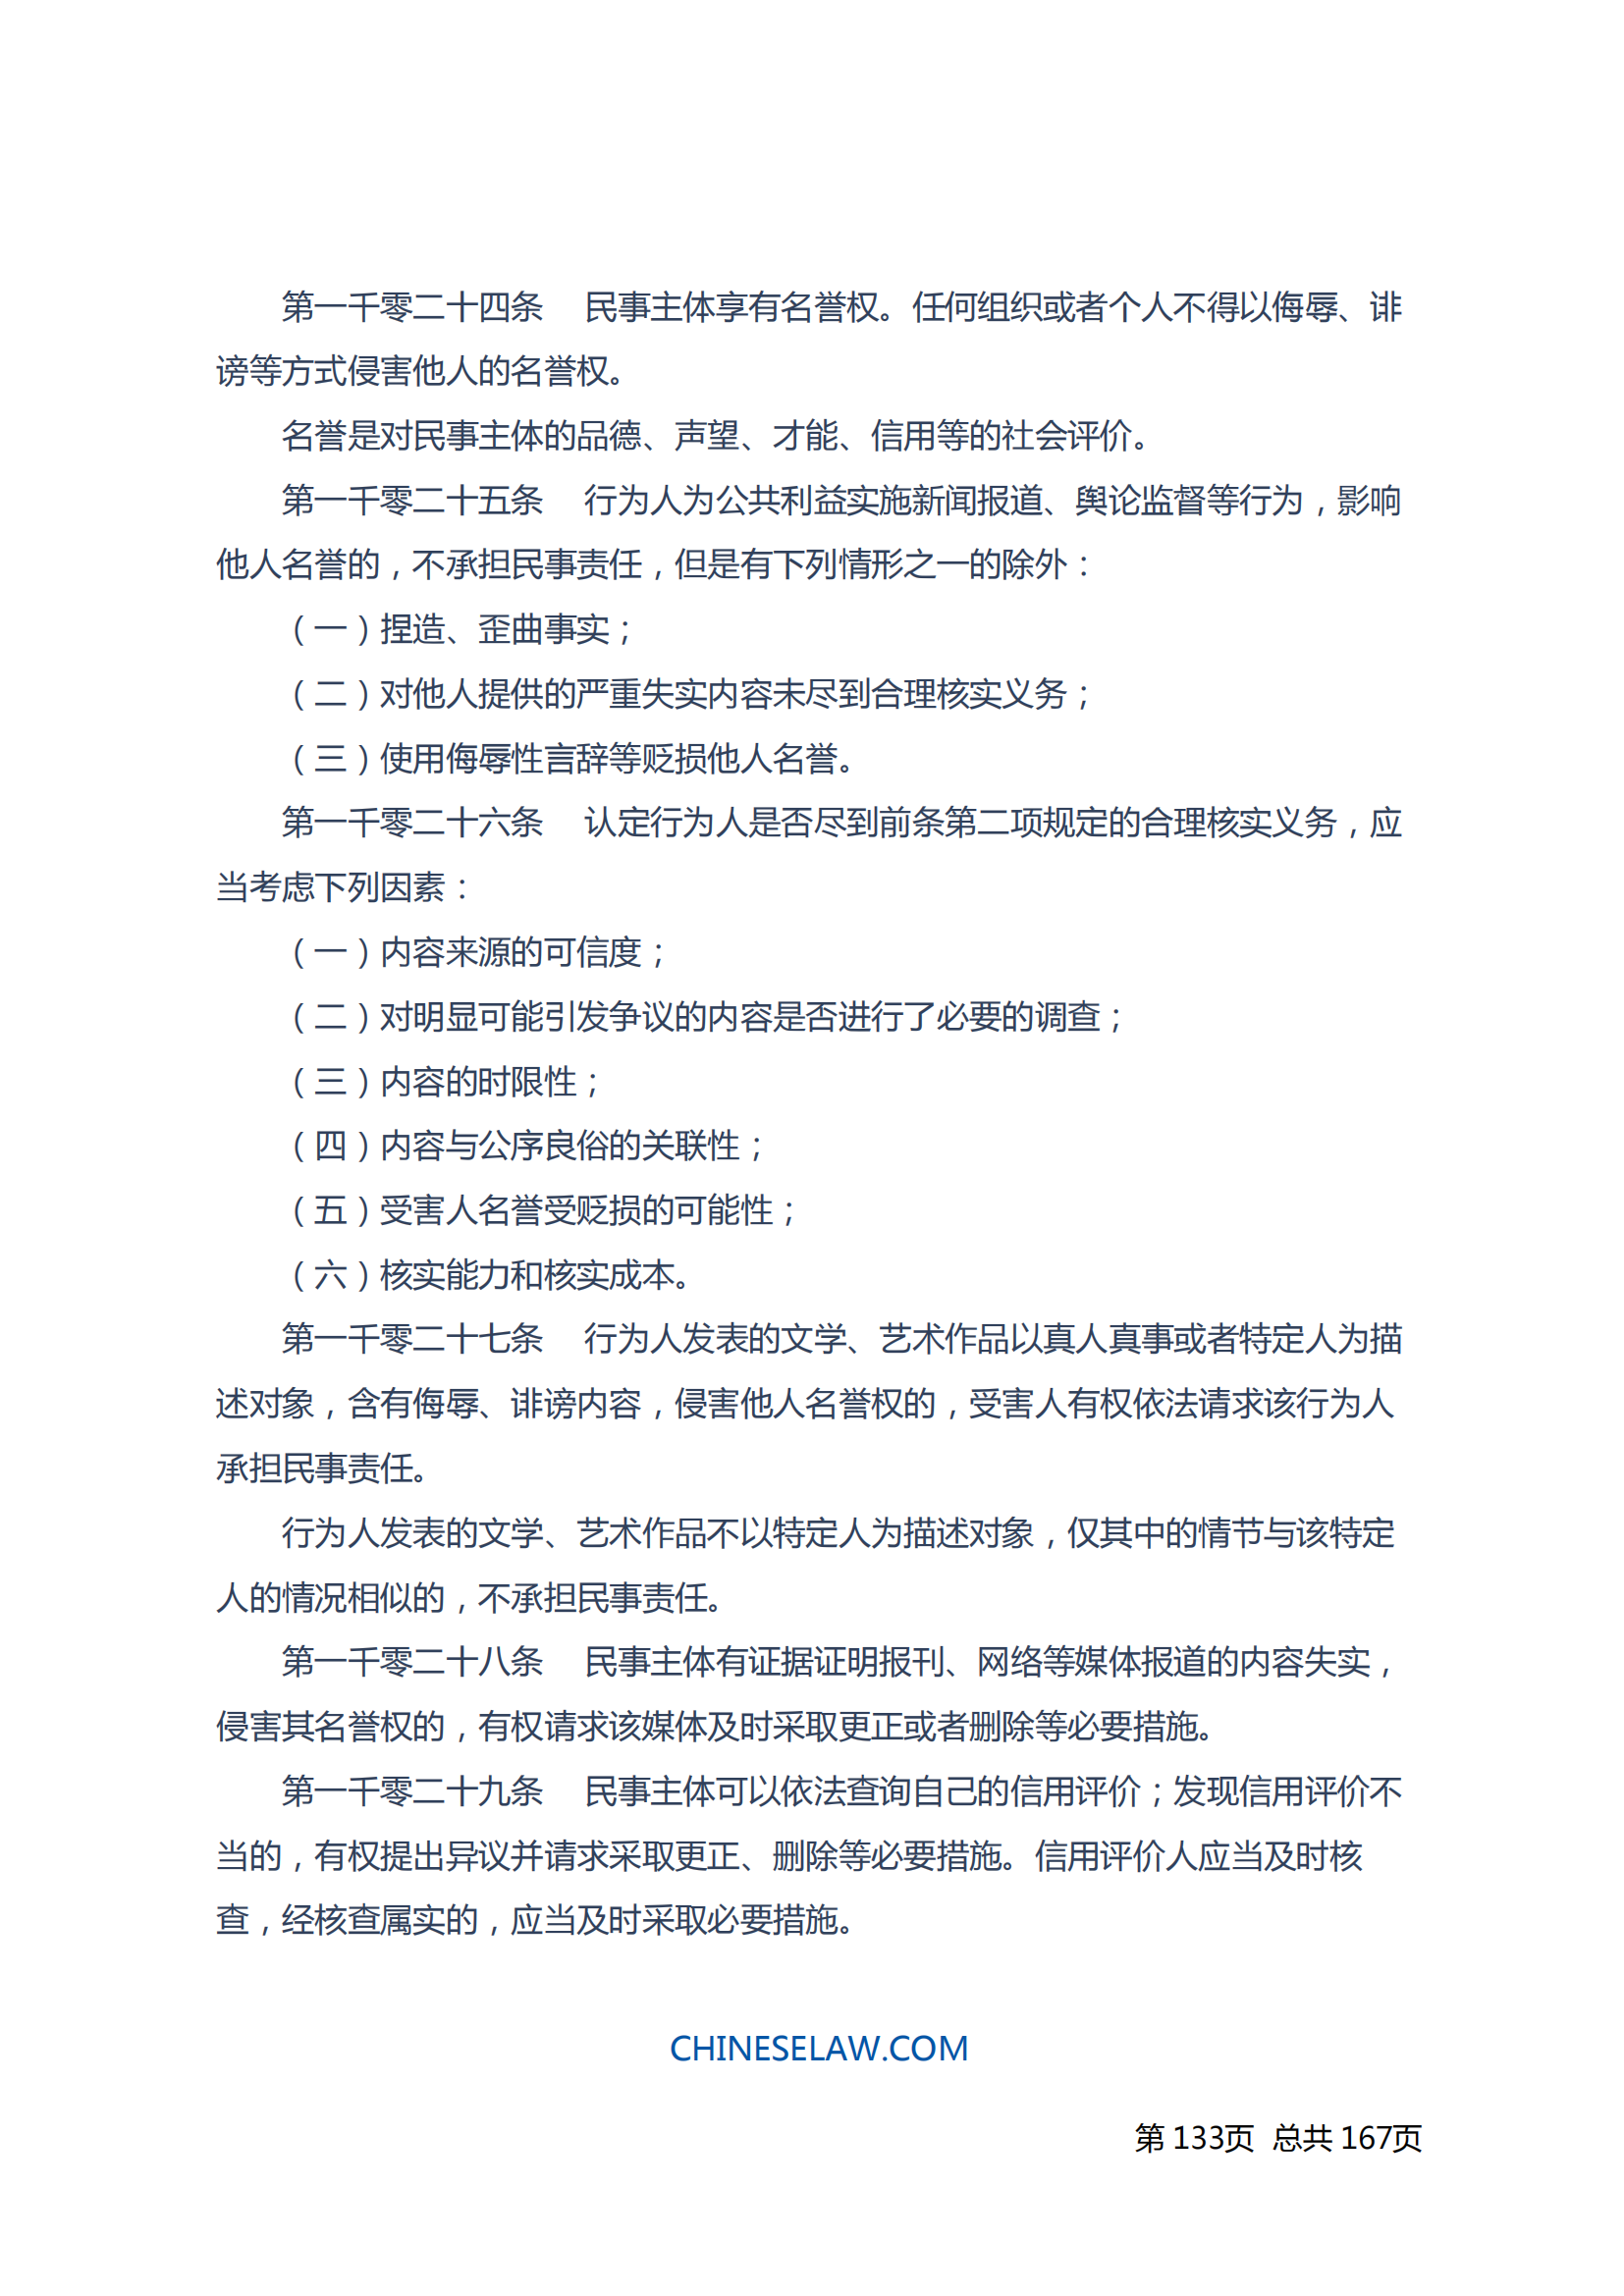 中华人民共和国民法典_132